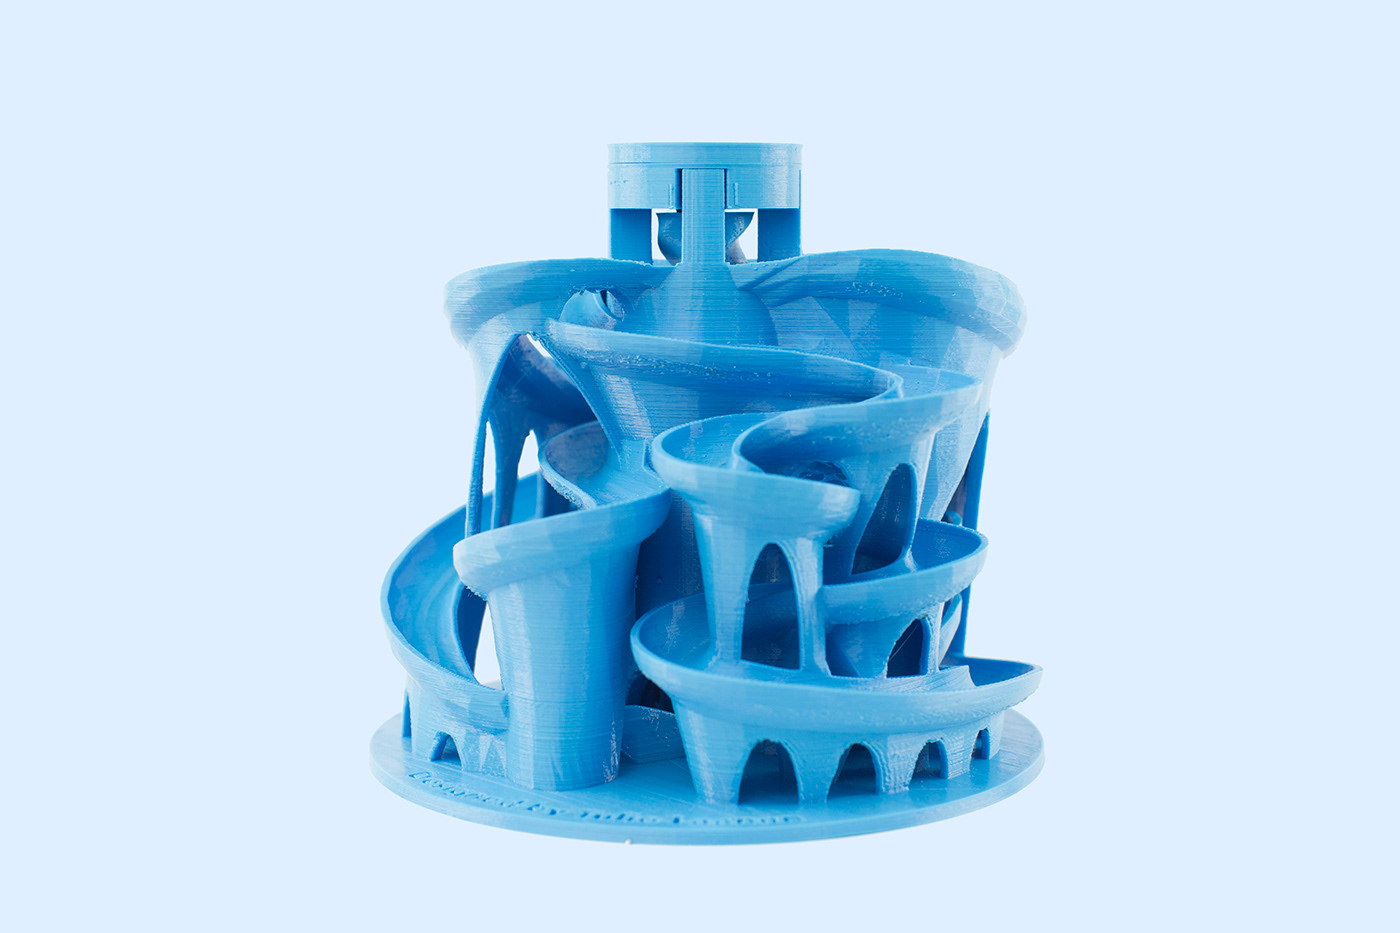 3D 3d print marble machine motion design product design 